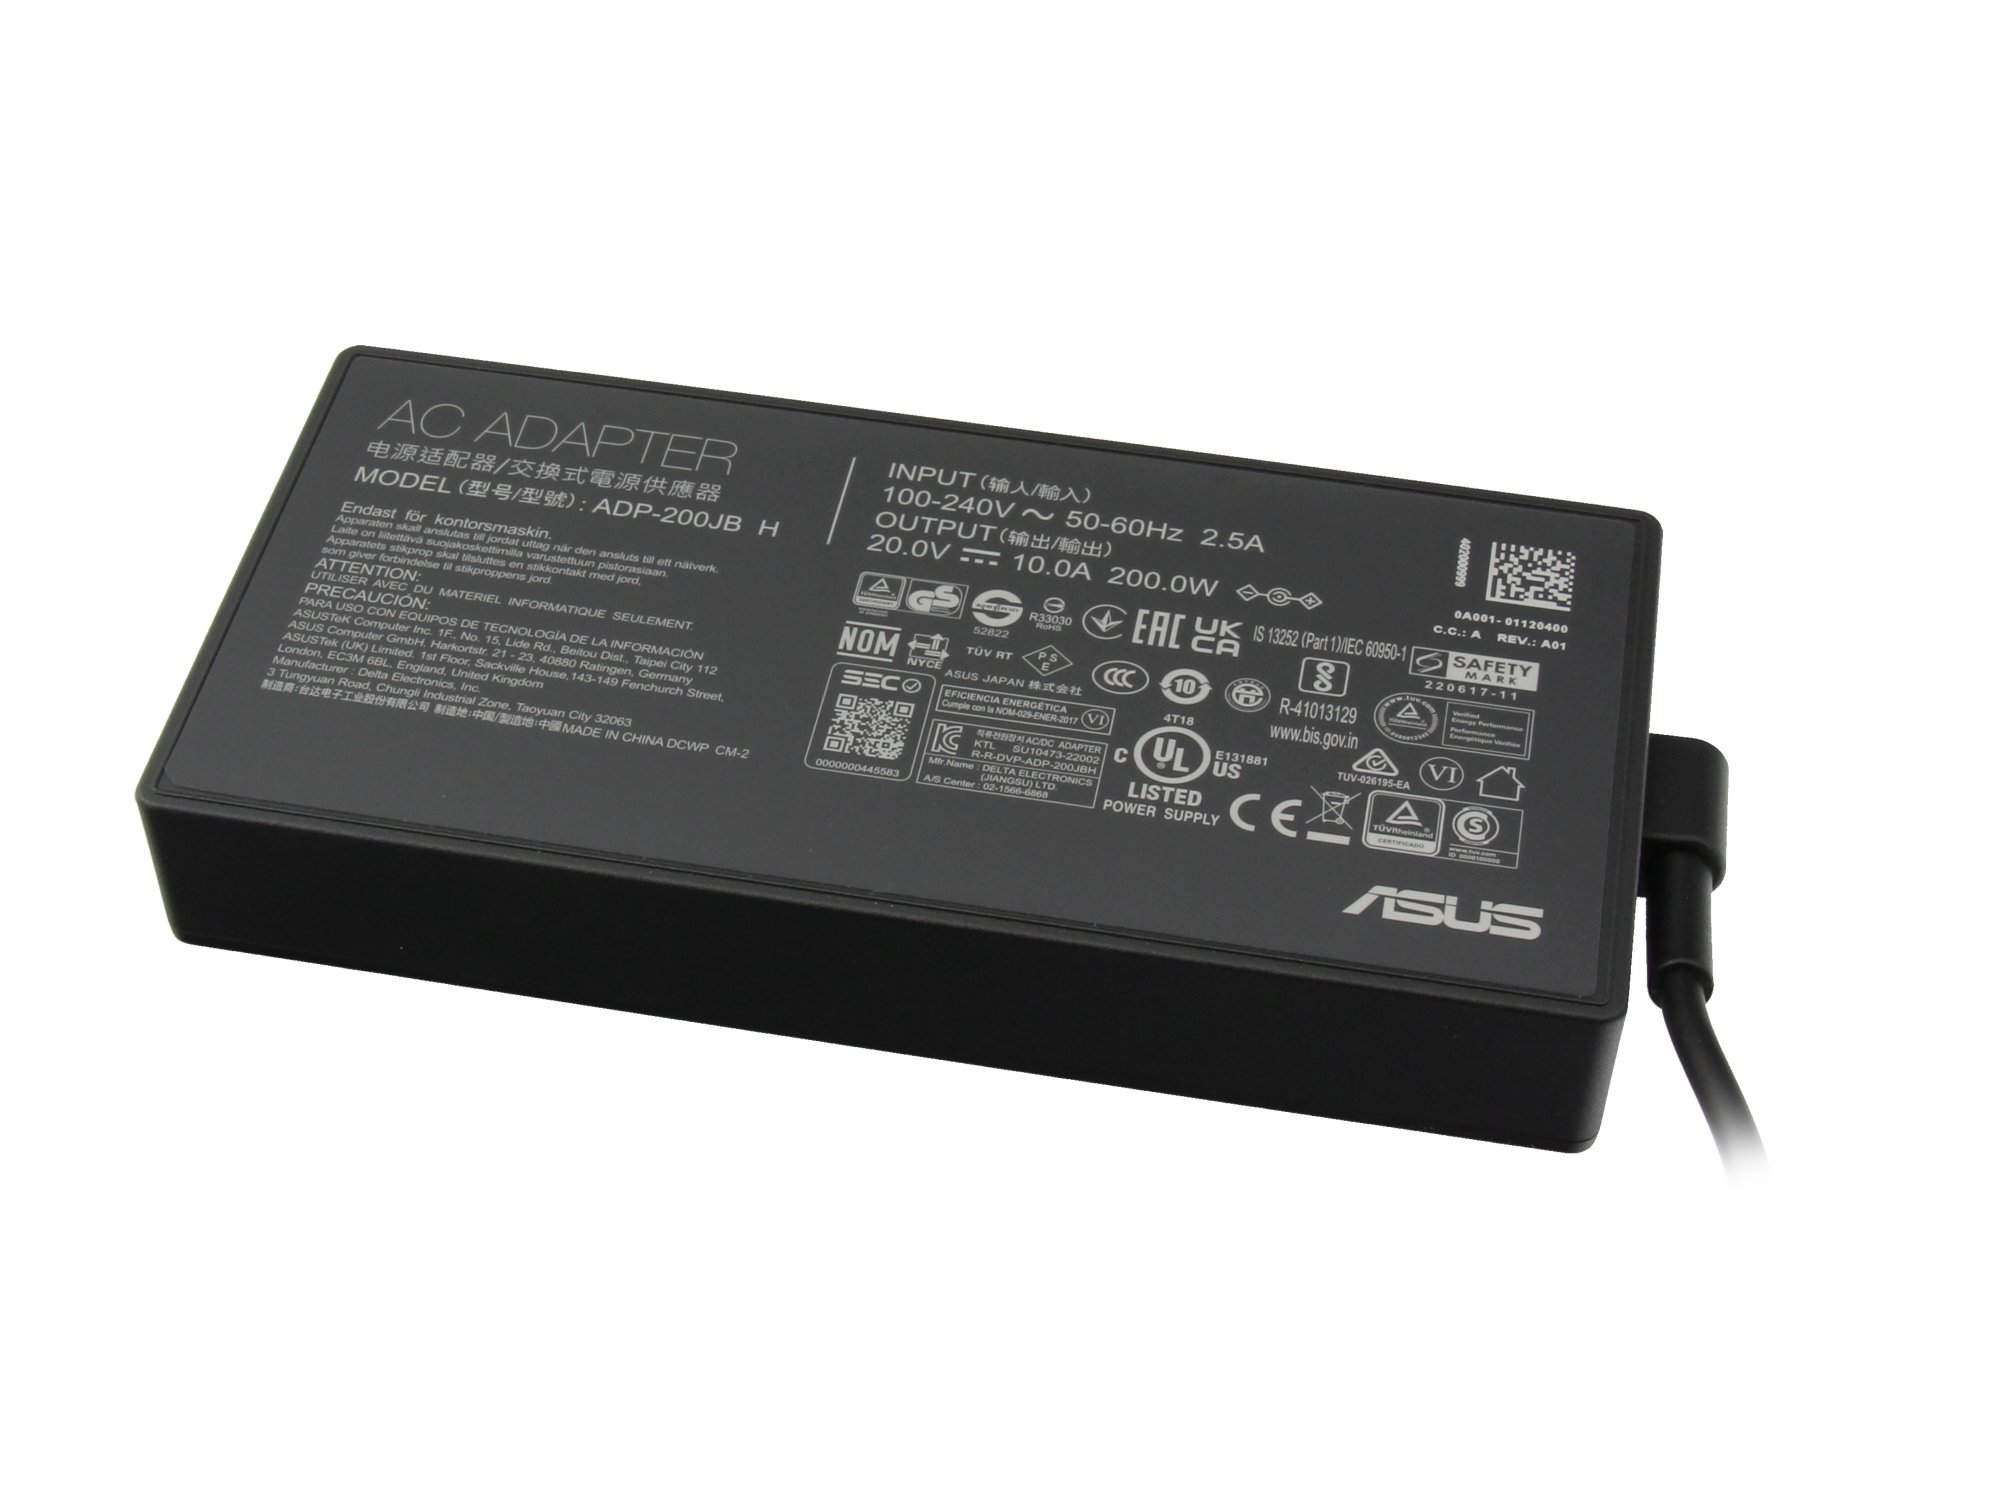 ASUS 0A001-01120300 Netzteil 200 Watt